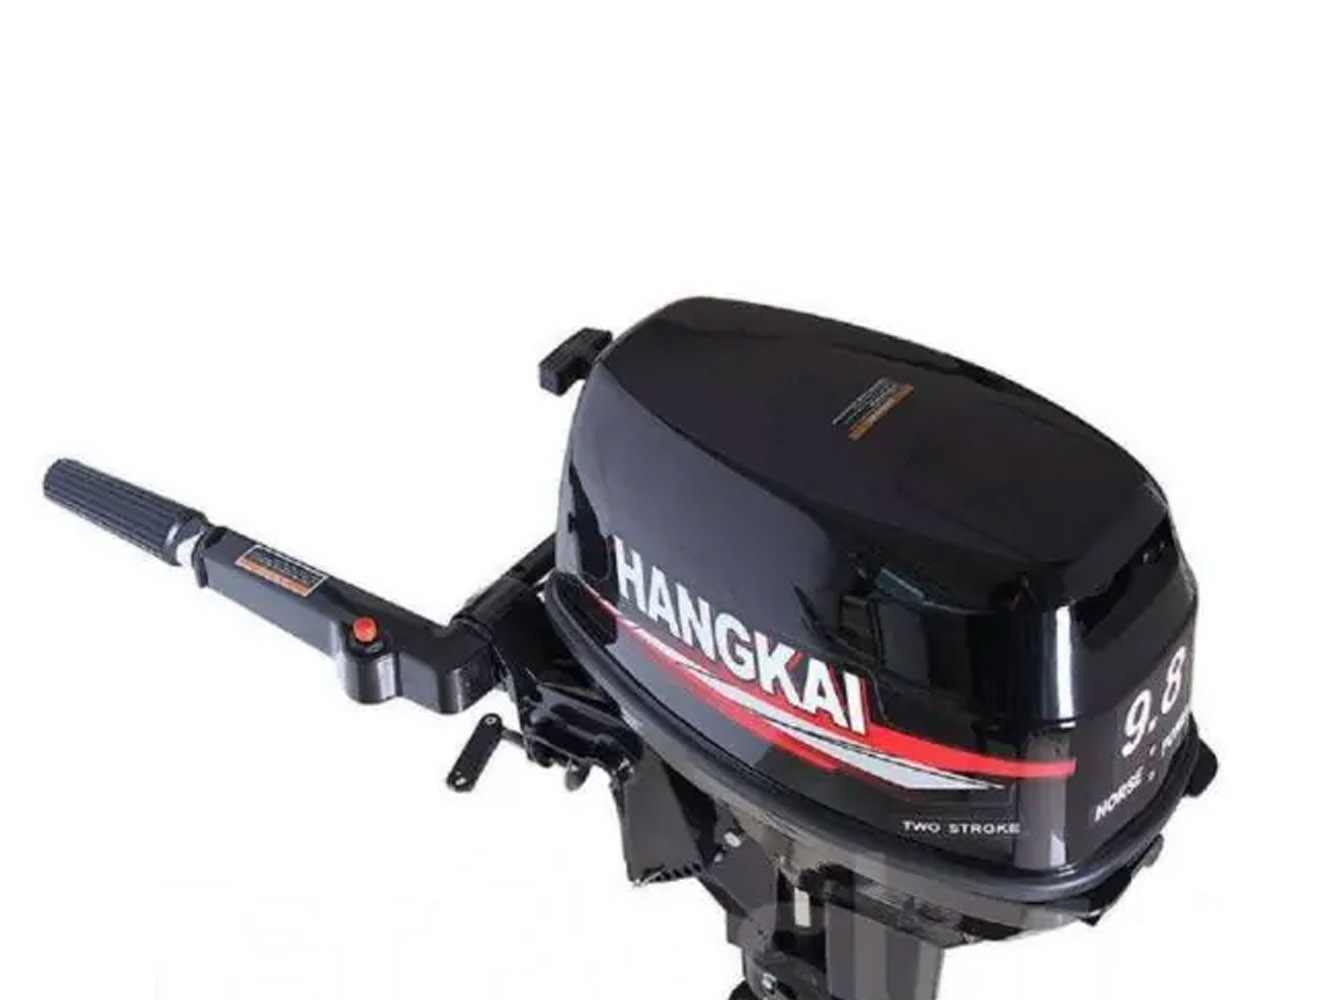 Мотор hangkai 9.8. Лодочный мотор Hangkai 9.8. Лодочный мотор Hangkai m9.8. Лодочный мотор Ханкай 9.8. Лодочный мотор Hangkai m9.9HP.